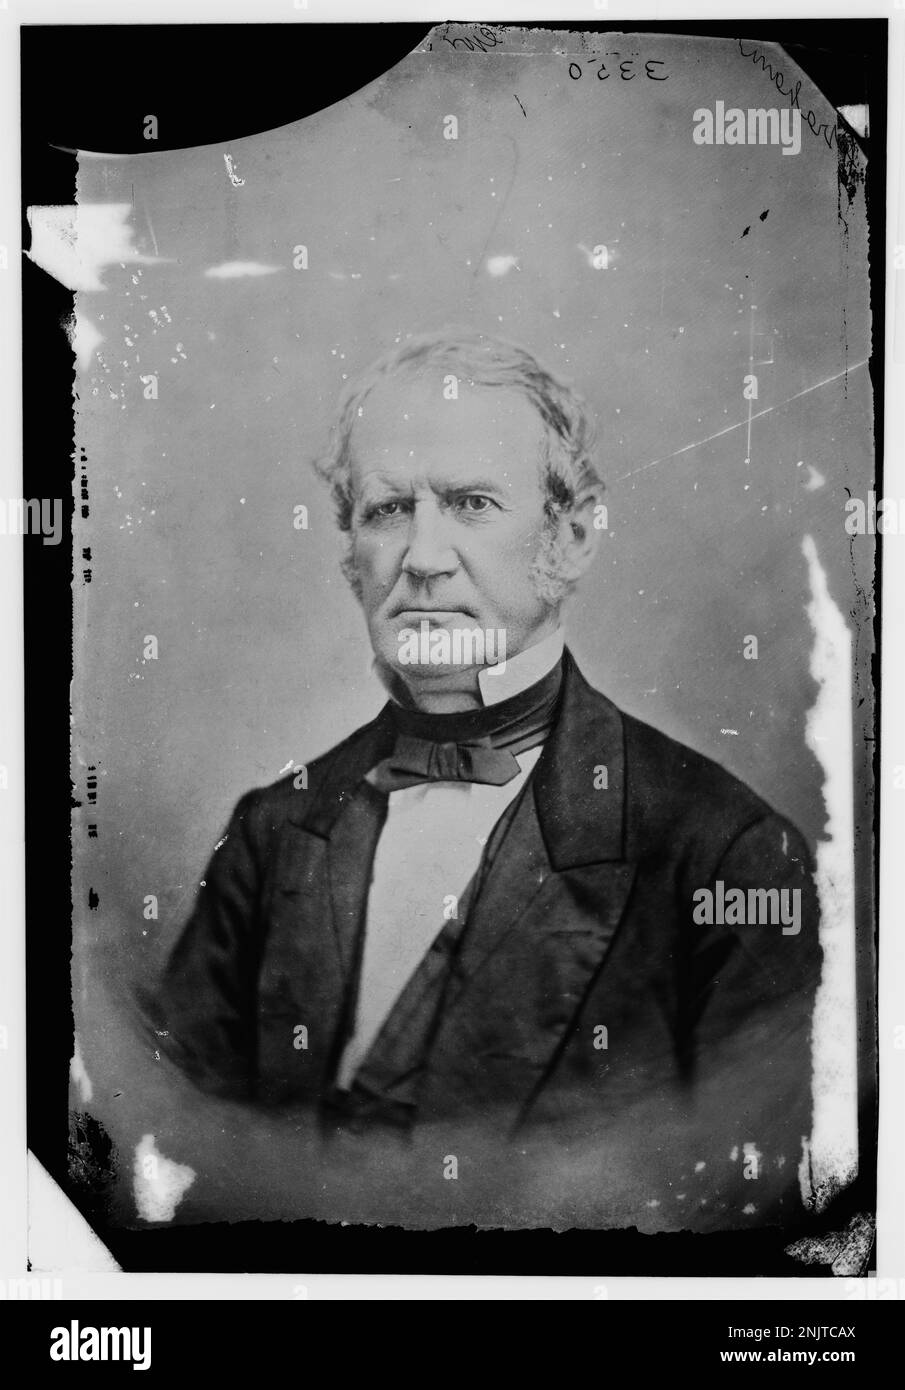 Regierung Wm. A. Graham, N.C., Regierung Von N.C. 1845-1849, Sek. Von der Marine im Kabinett von Pres. Fillmore, 20. Juli 1850 bis 7. März 1853, Mitglied des Staatssenats, 1854., 1862., 1865, Senator im Kongress 2. Stockfoto